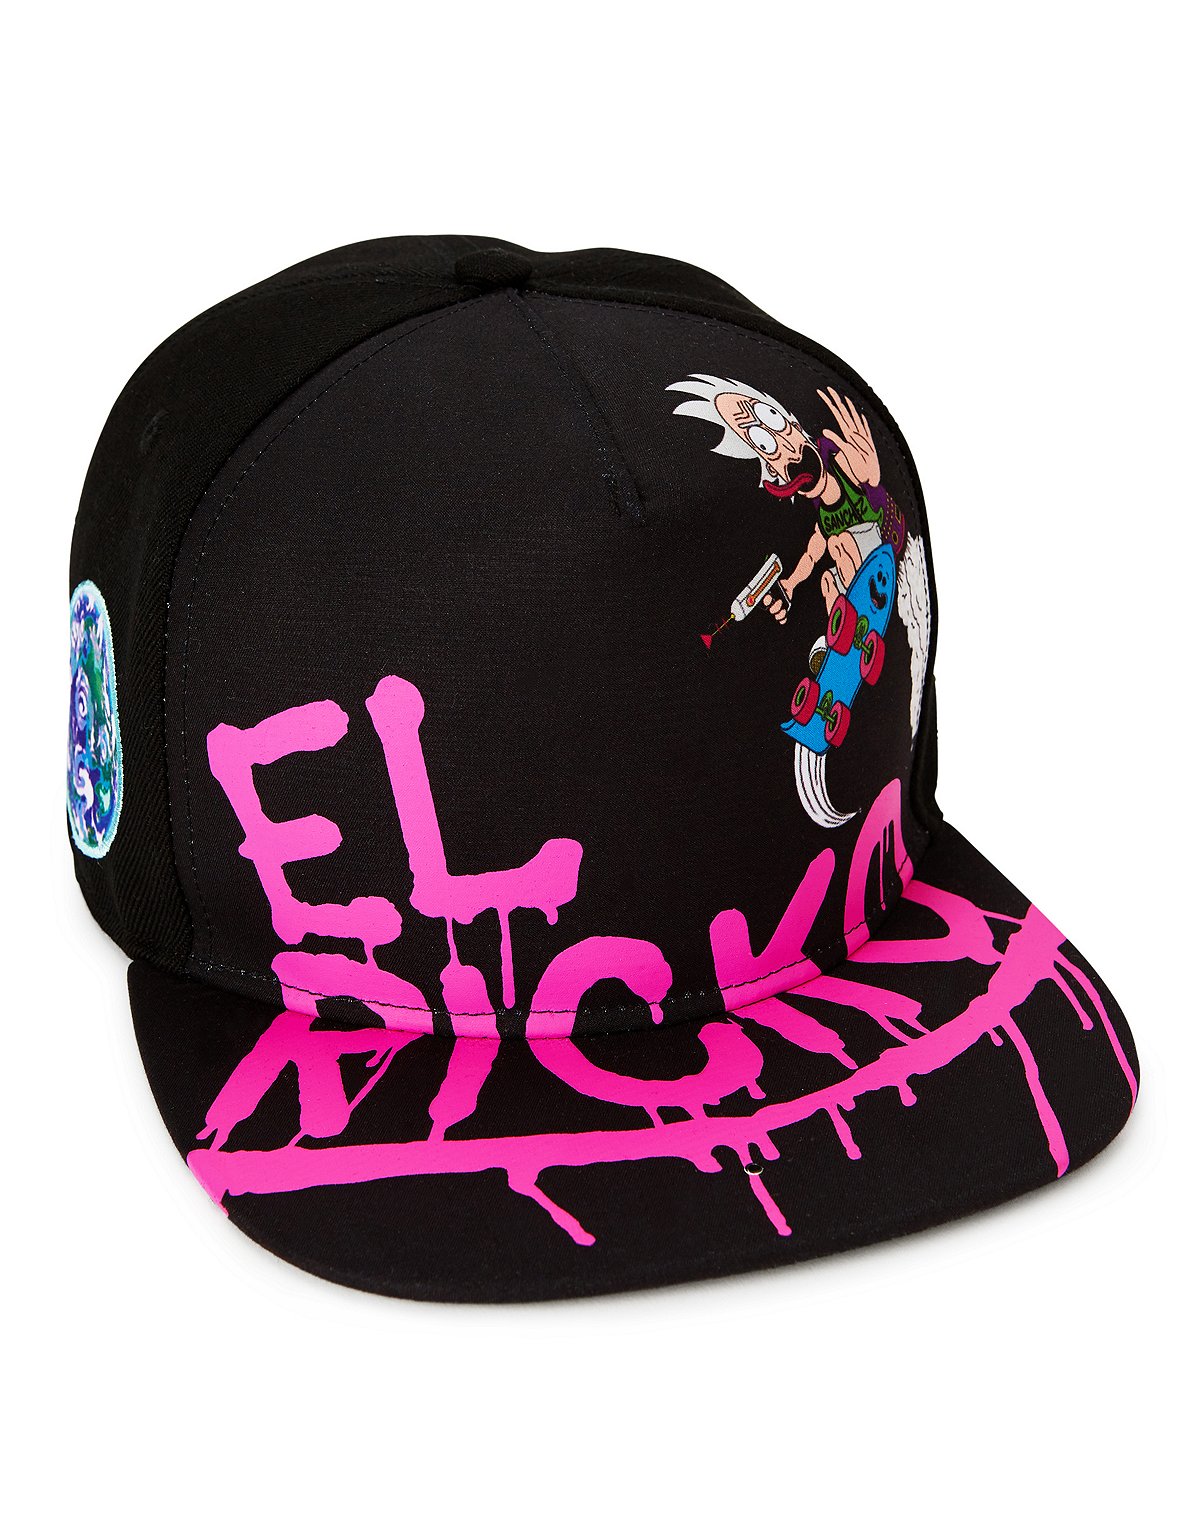 El Ricko Snapback Hat - Rick and Morty